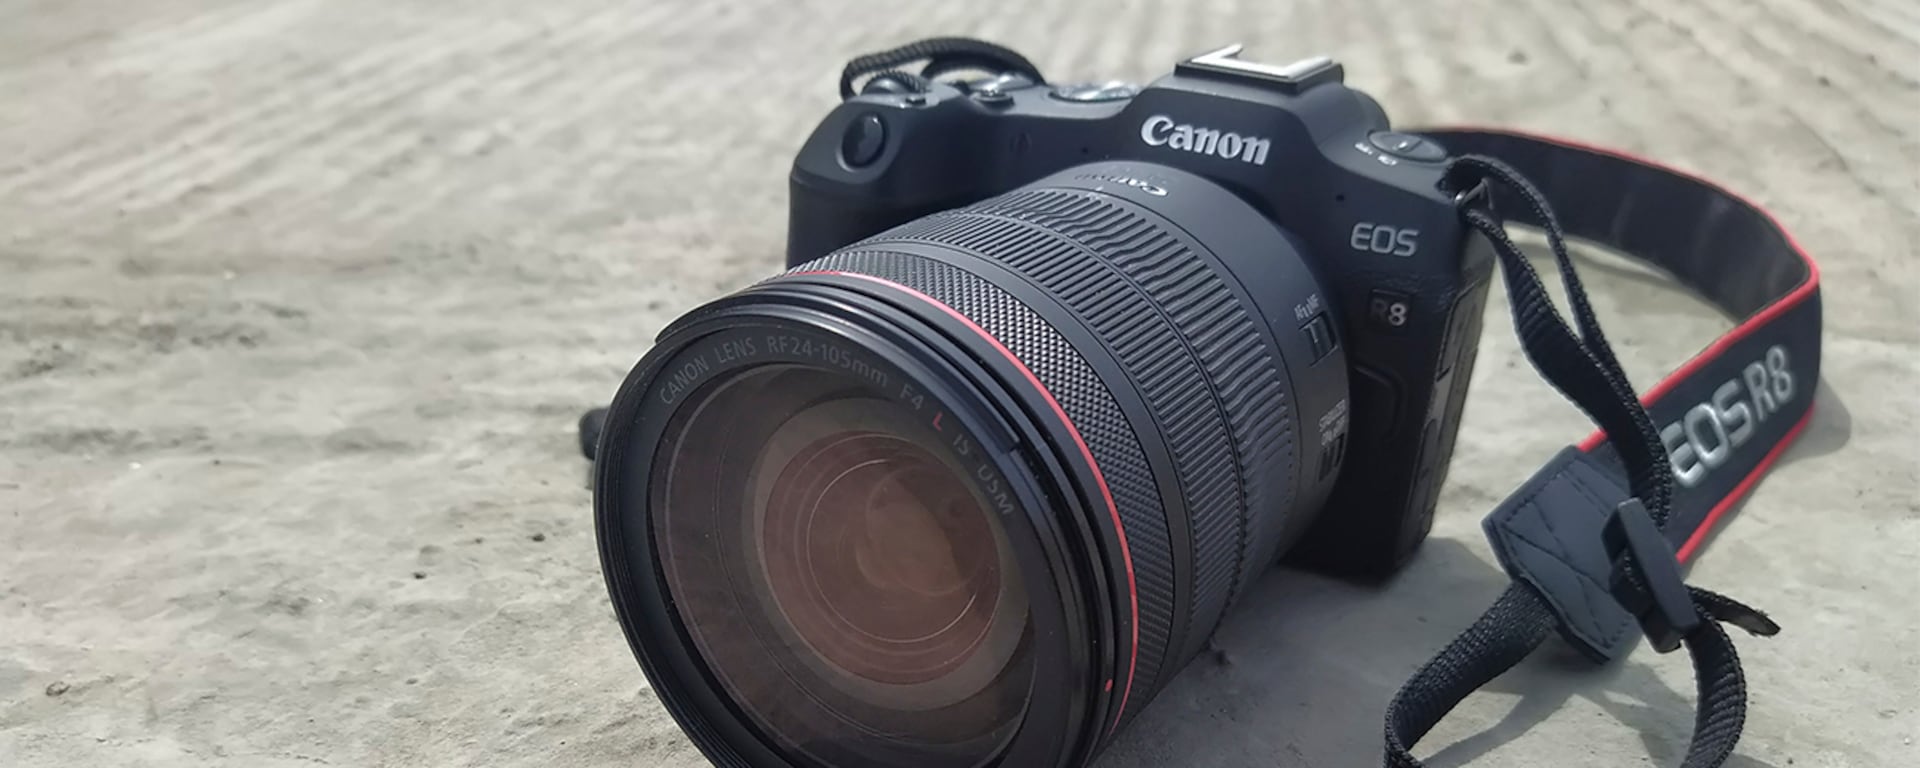 Probamos la nueva Canon EOS R8: más calidad de video 4K para creadores de contenido | REVIEW 